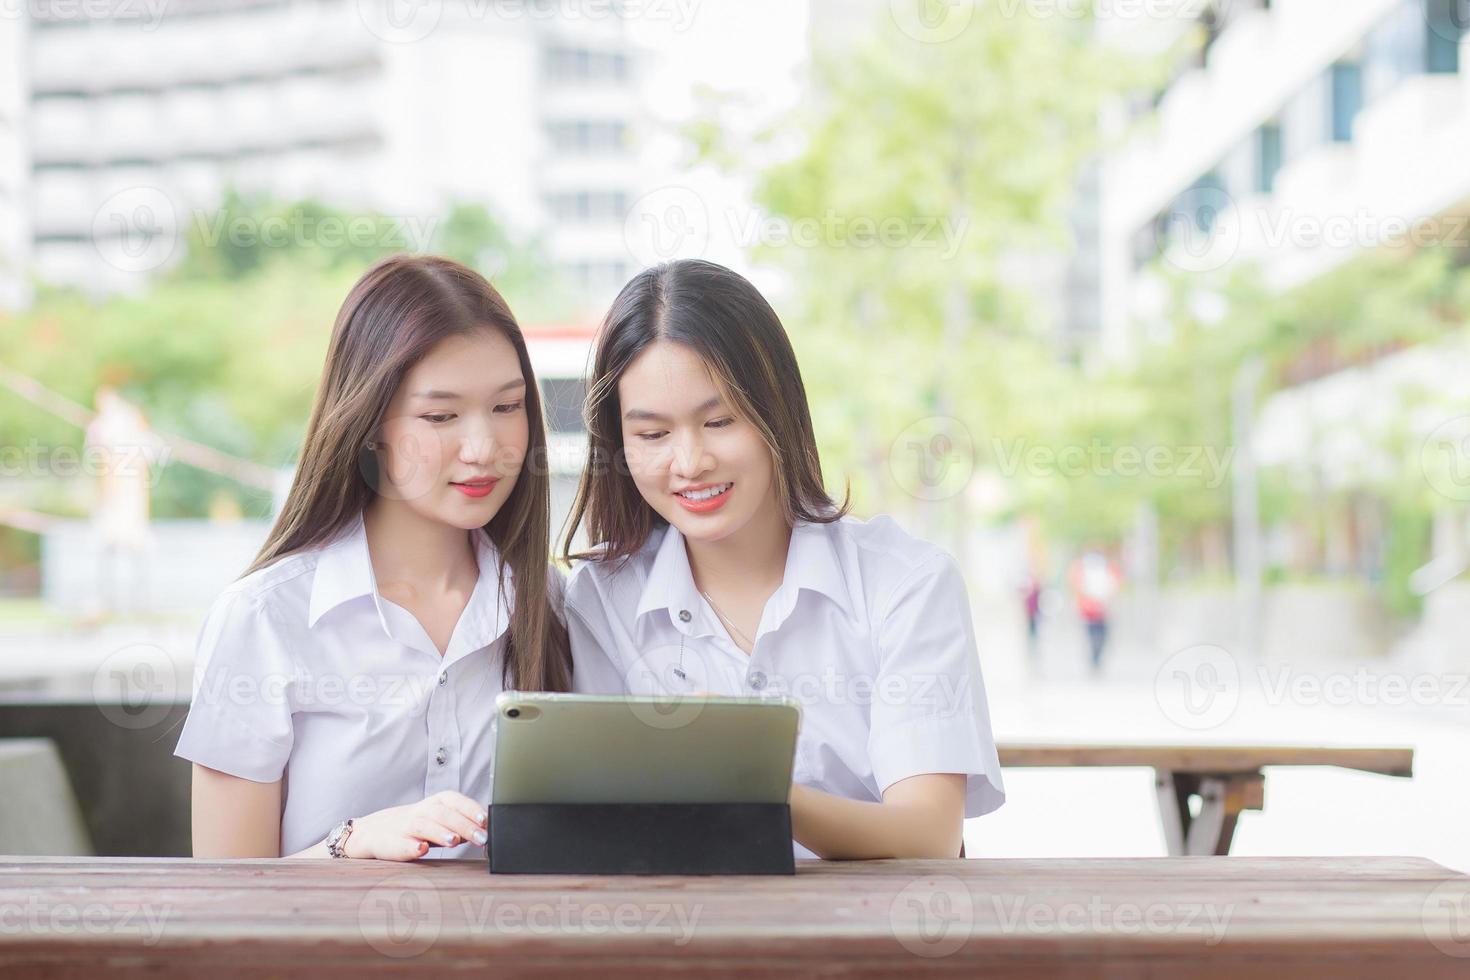 deux jeunes étudiantes asiatiques se consultent et utilisent une tablette pour rechercher des informations pour un rapport d'étude. photo